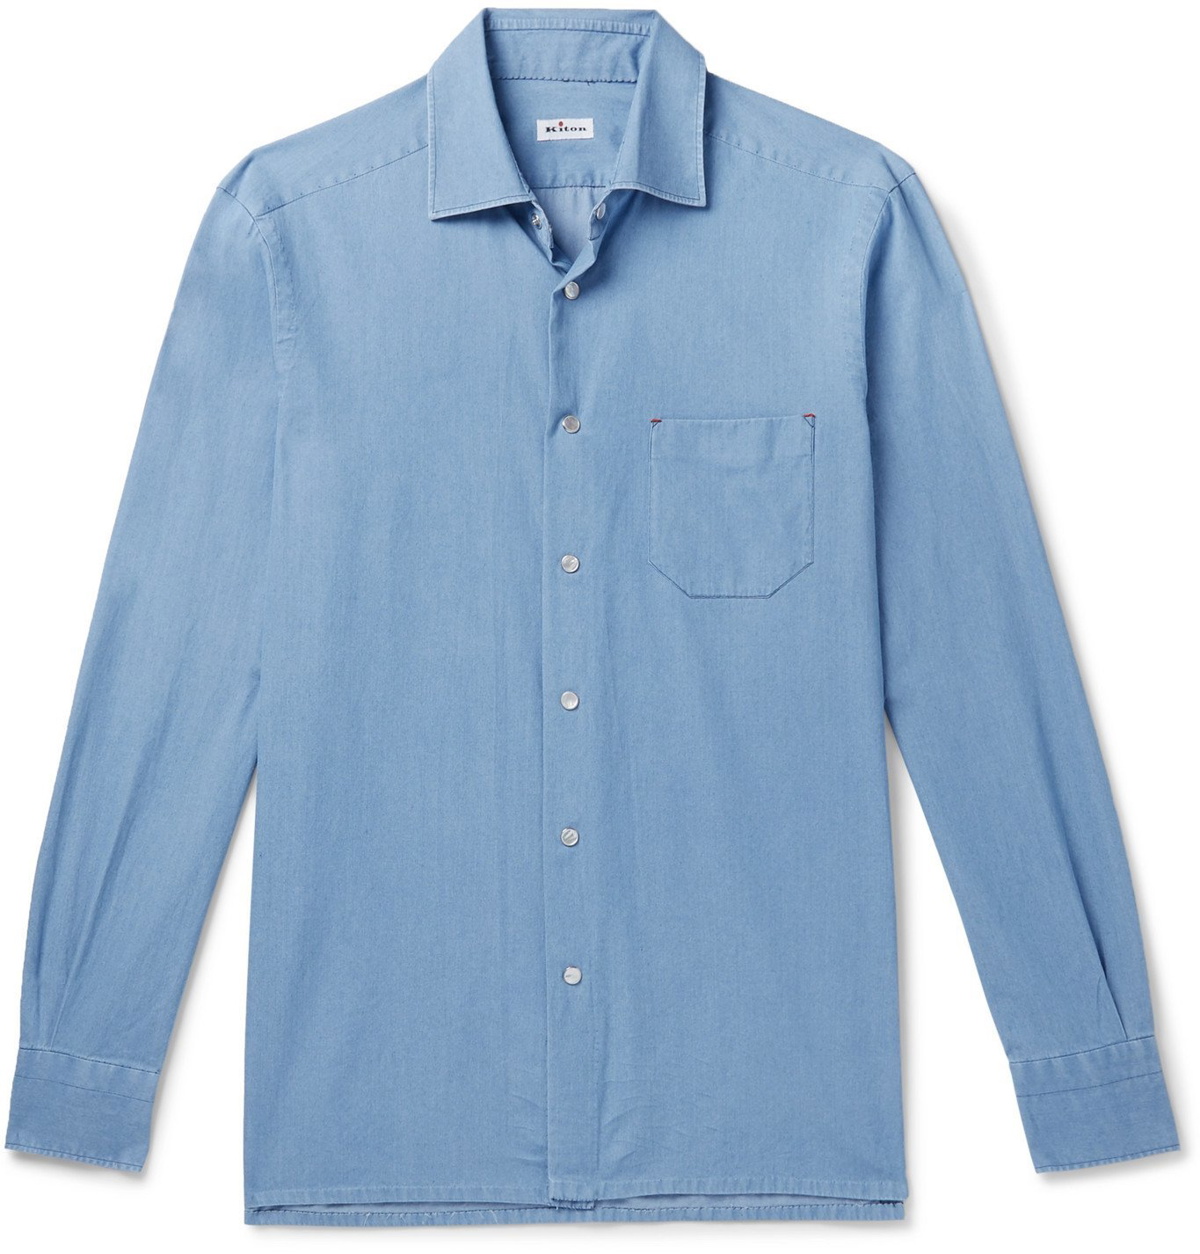 Kiton - Slim-Fit Cotton-Chambray Shirt - Blue Kiton